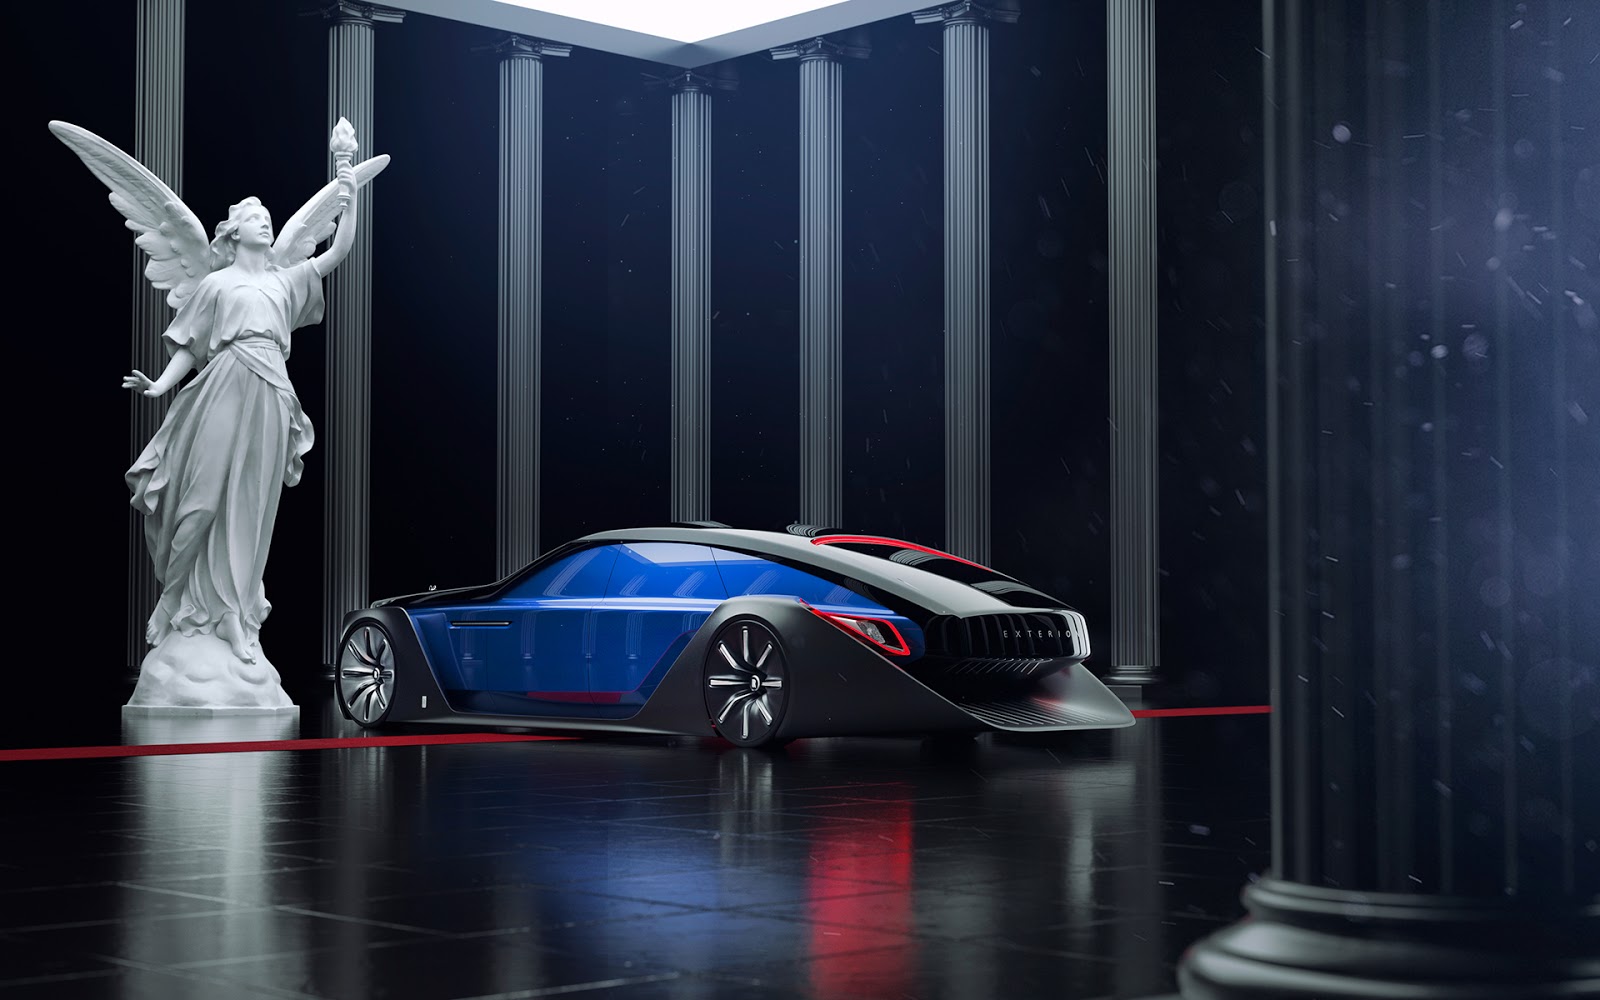 Hãng xe siêu sang RollsRoyce chuyển sang sản xuất ô tô điện vào năm 2030   Thương trường 24h